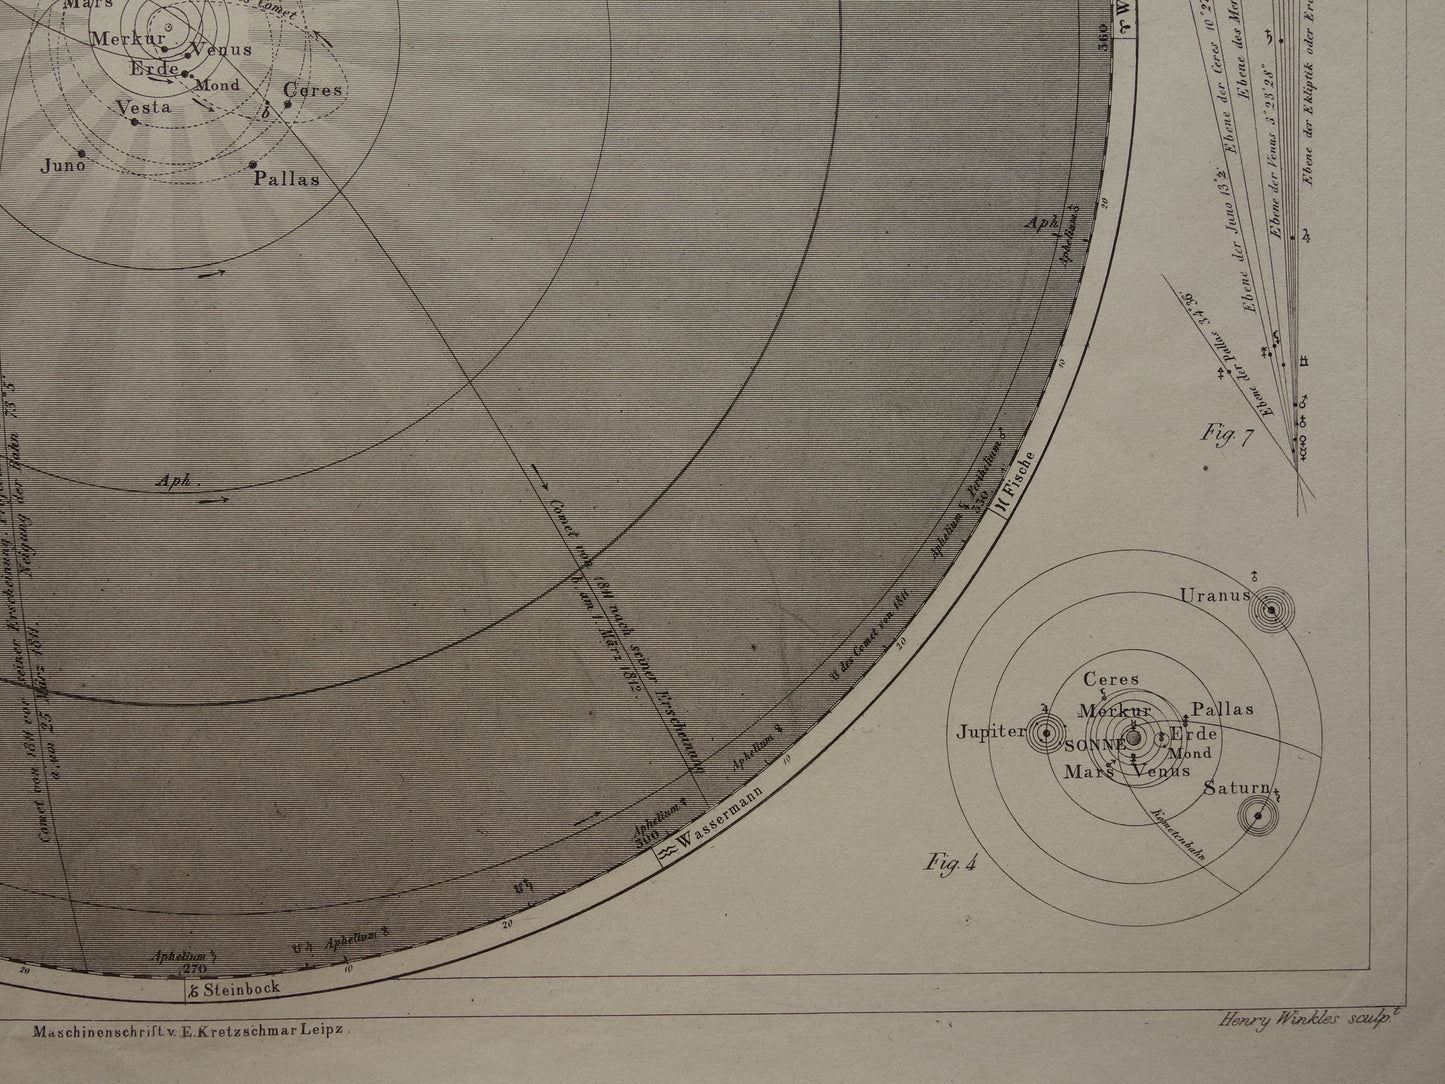 170+ jaar oude astronomie prent over zonnestelsel aarde planeten 1849 originele antieke print vintage astronomische illustratie